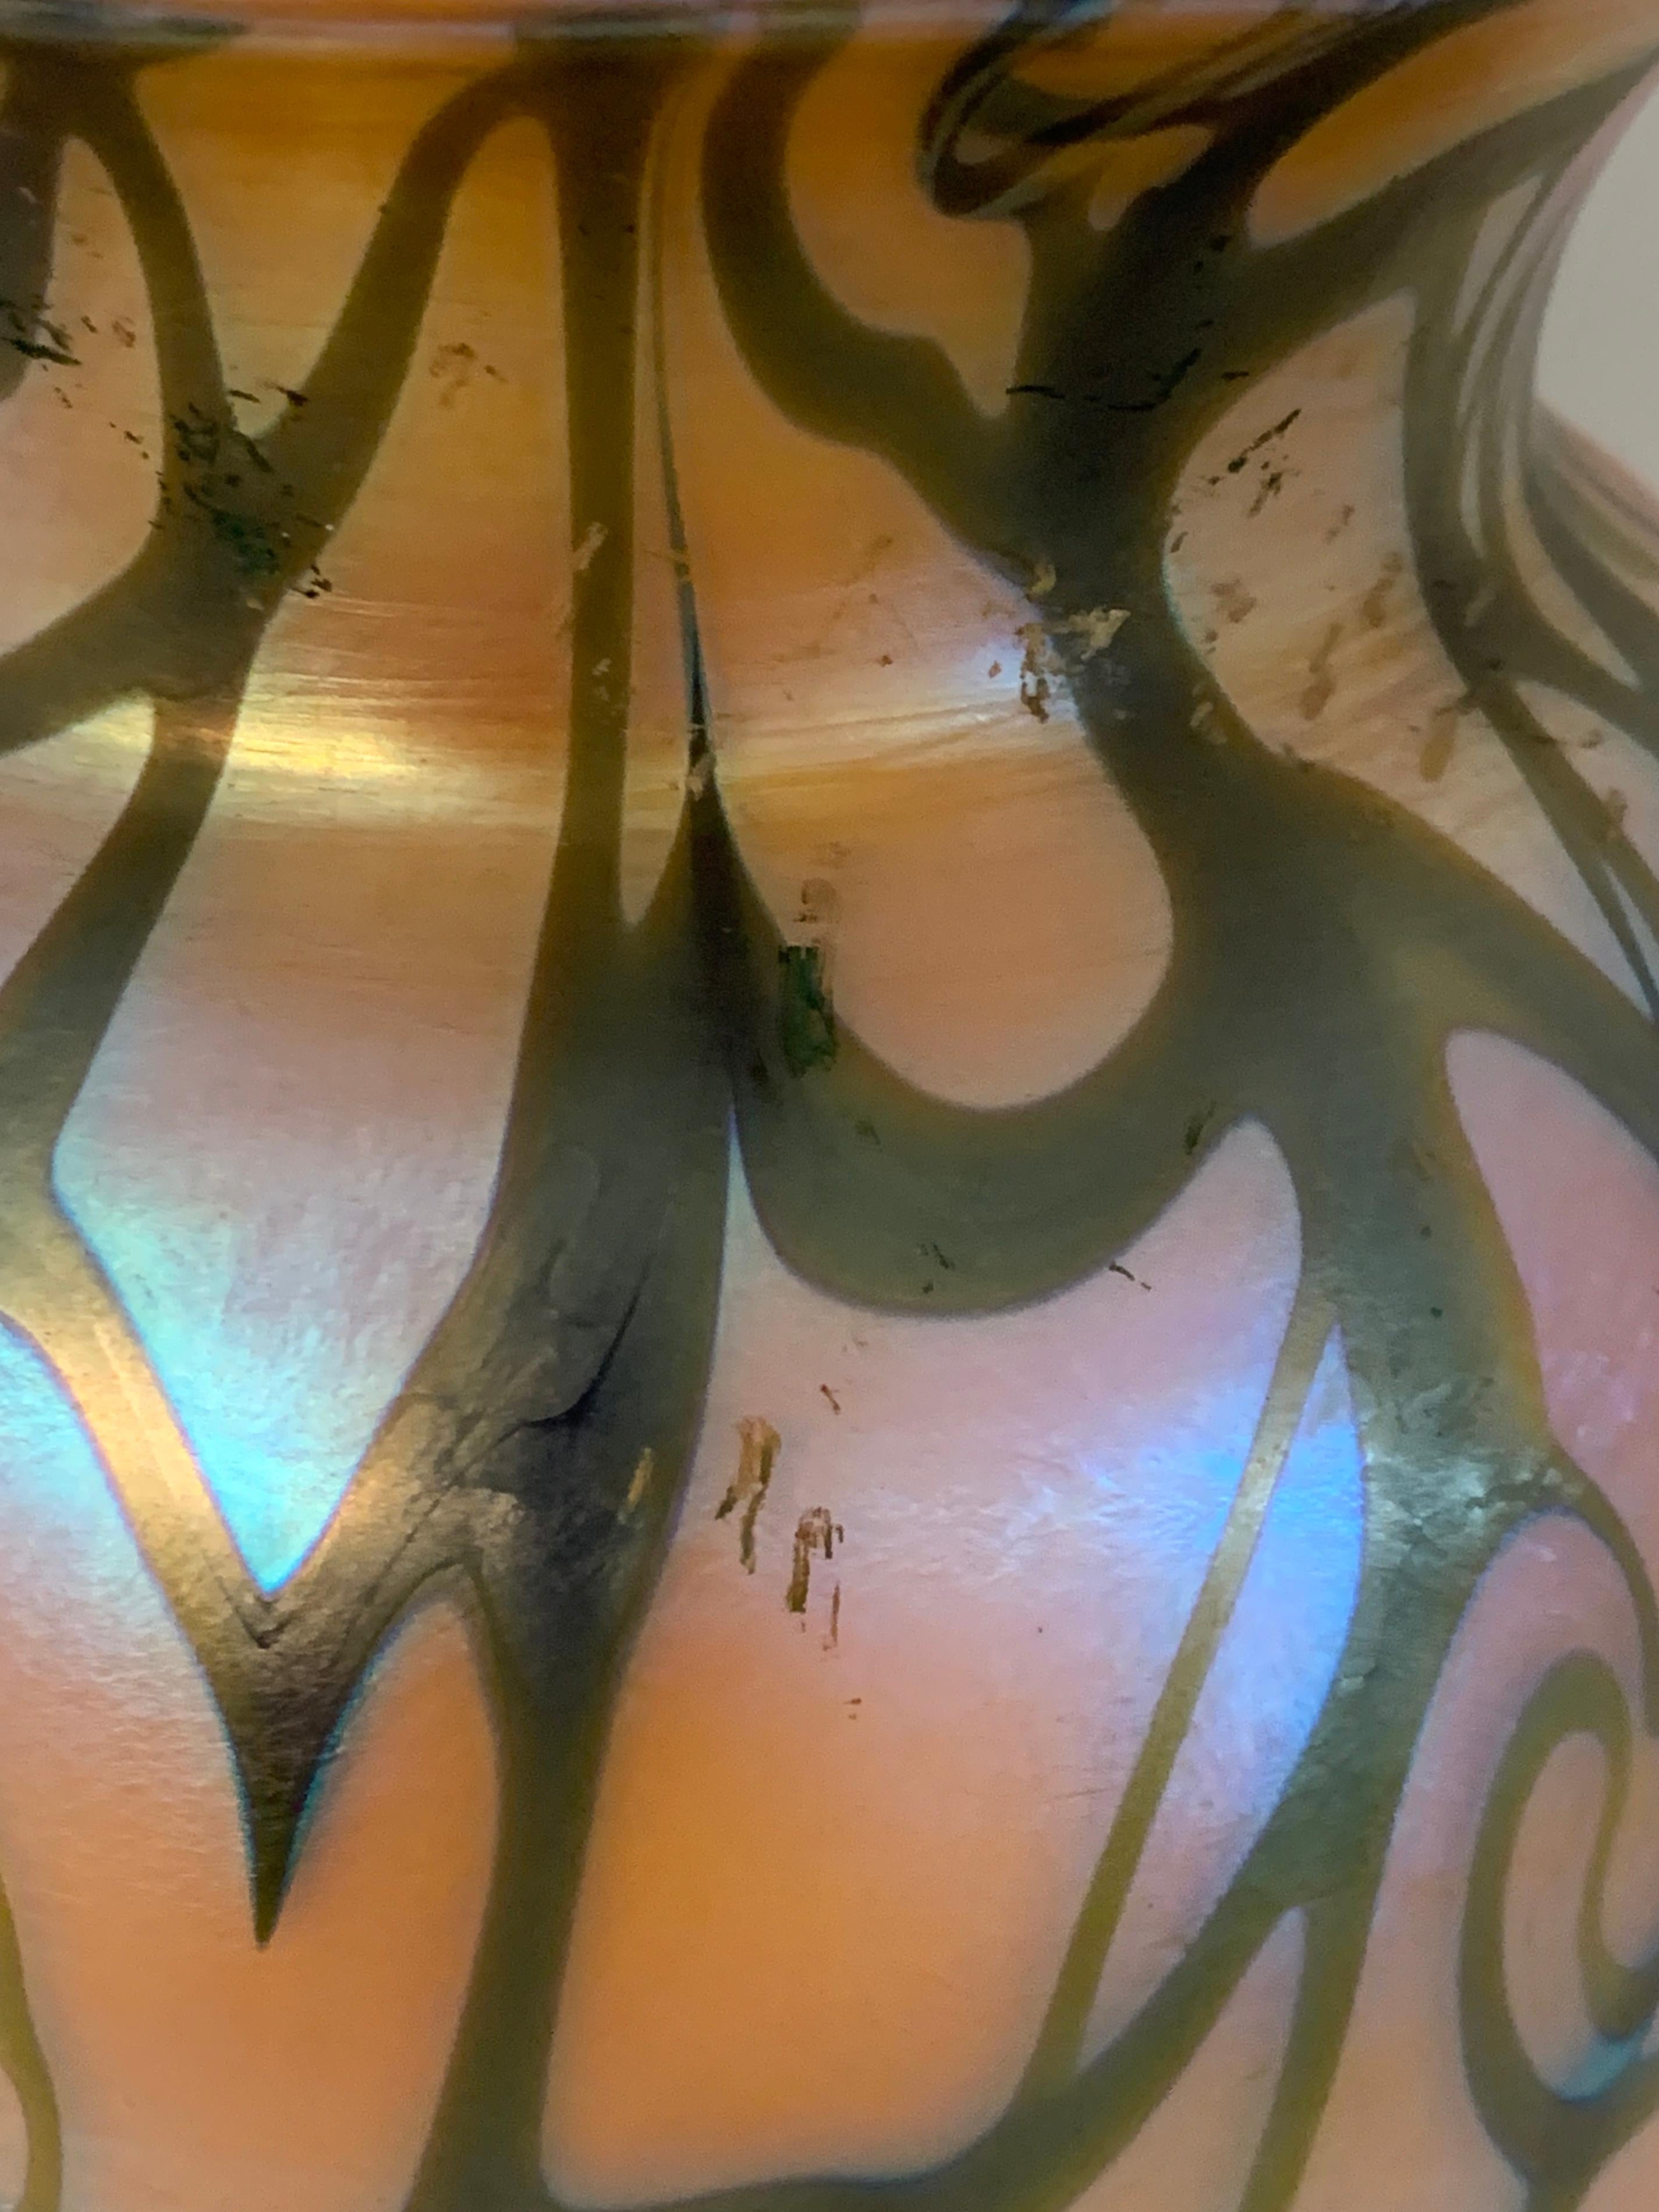 Une belle pièce de verre d'art par Durand dans le motif King Tut. C'est un beau morceau de verre mais malheureusement il a été percé pour en faire une lampe. Cela n'enlève cependant rien à sa beauté lorsqu'il est exposé. Il y a quelques résidus de